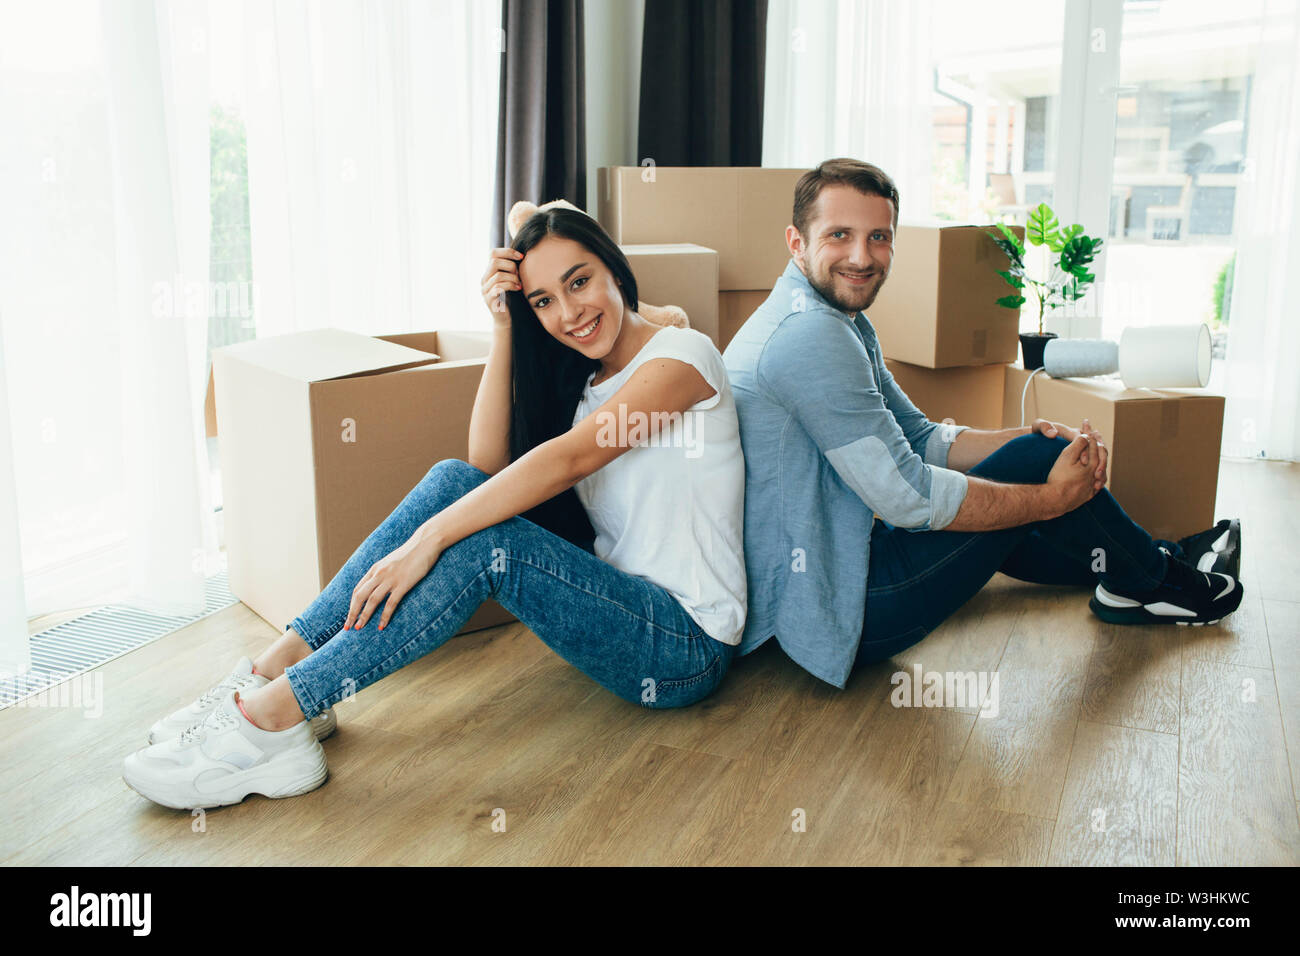 Jeune couple assis près de boîtes de carton, déménagement nouvelle maison Banque D'Images